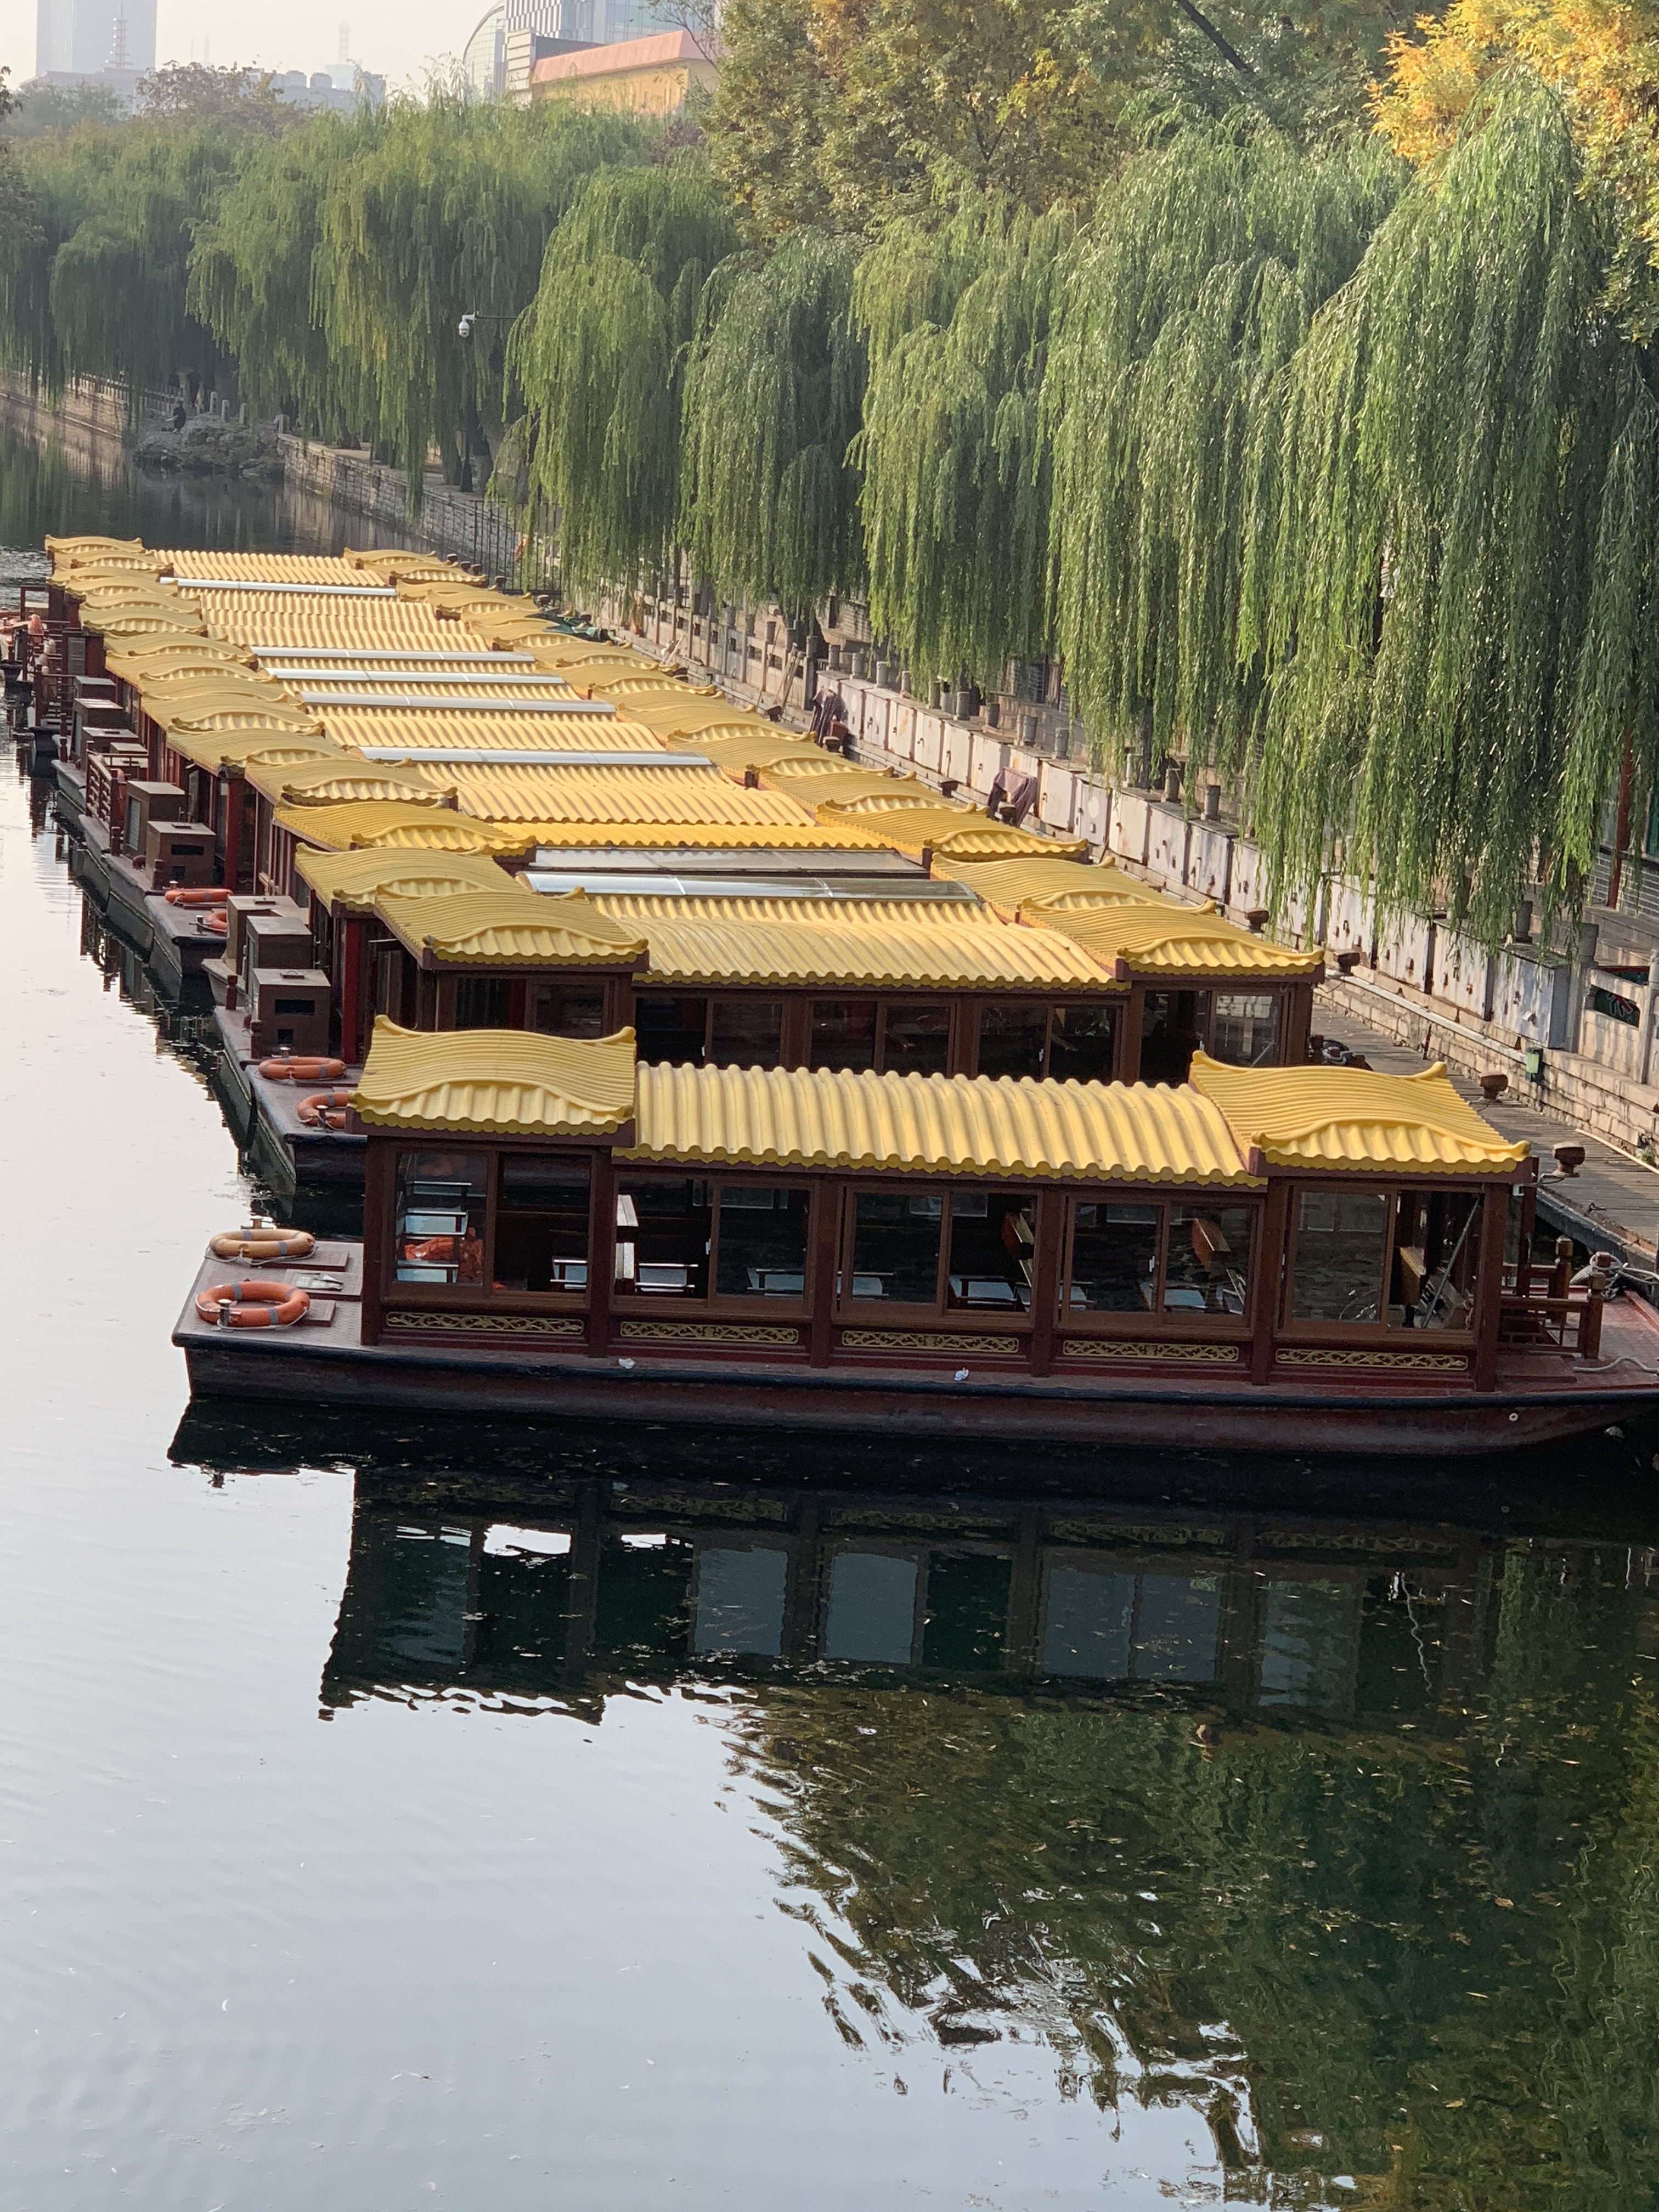 Shandong boats